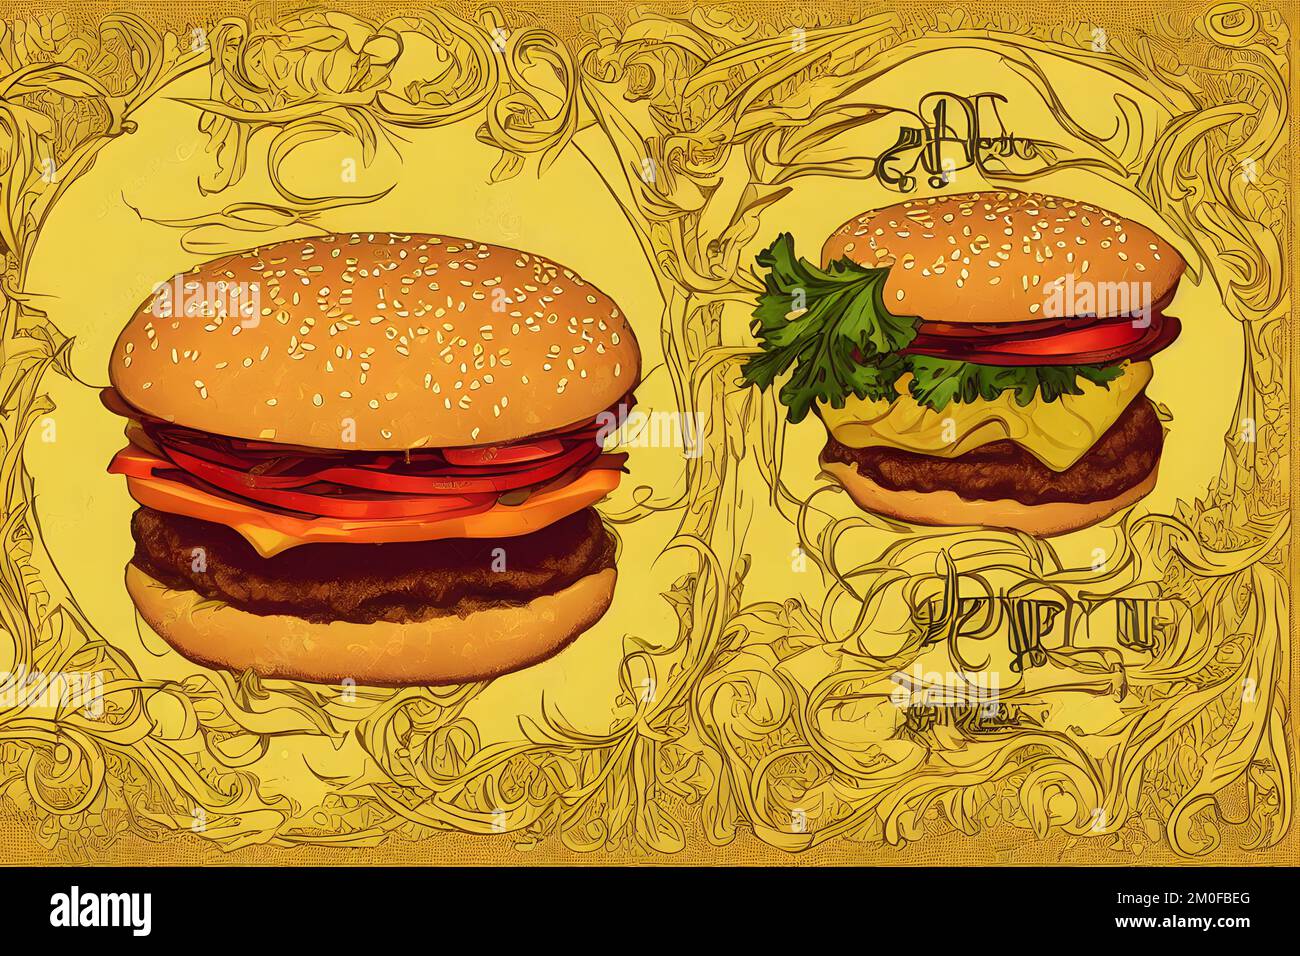 Illustration d'un hamburger de style Art nouveau, un fast-food classique Banque D'Images